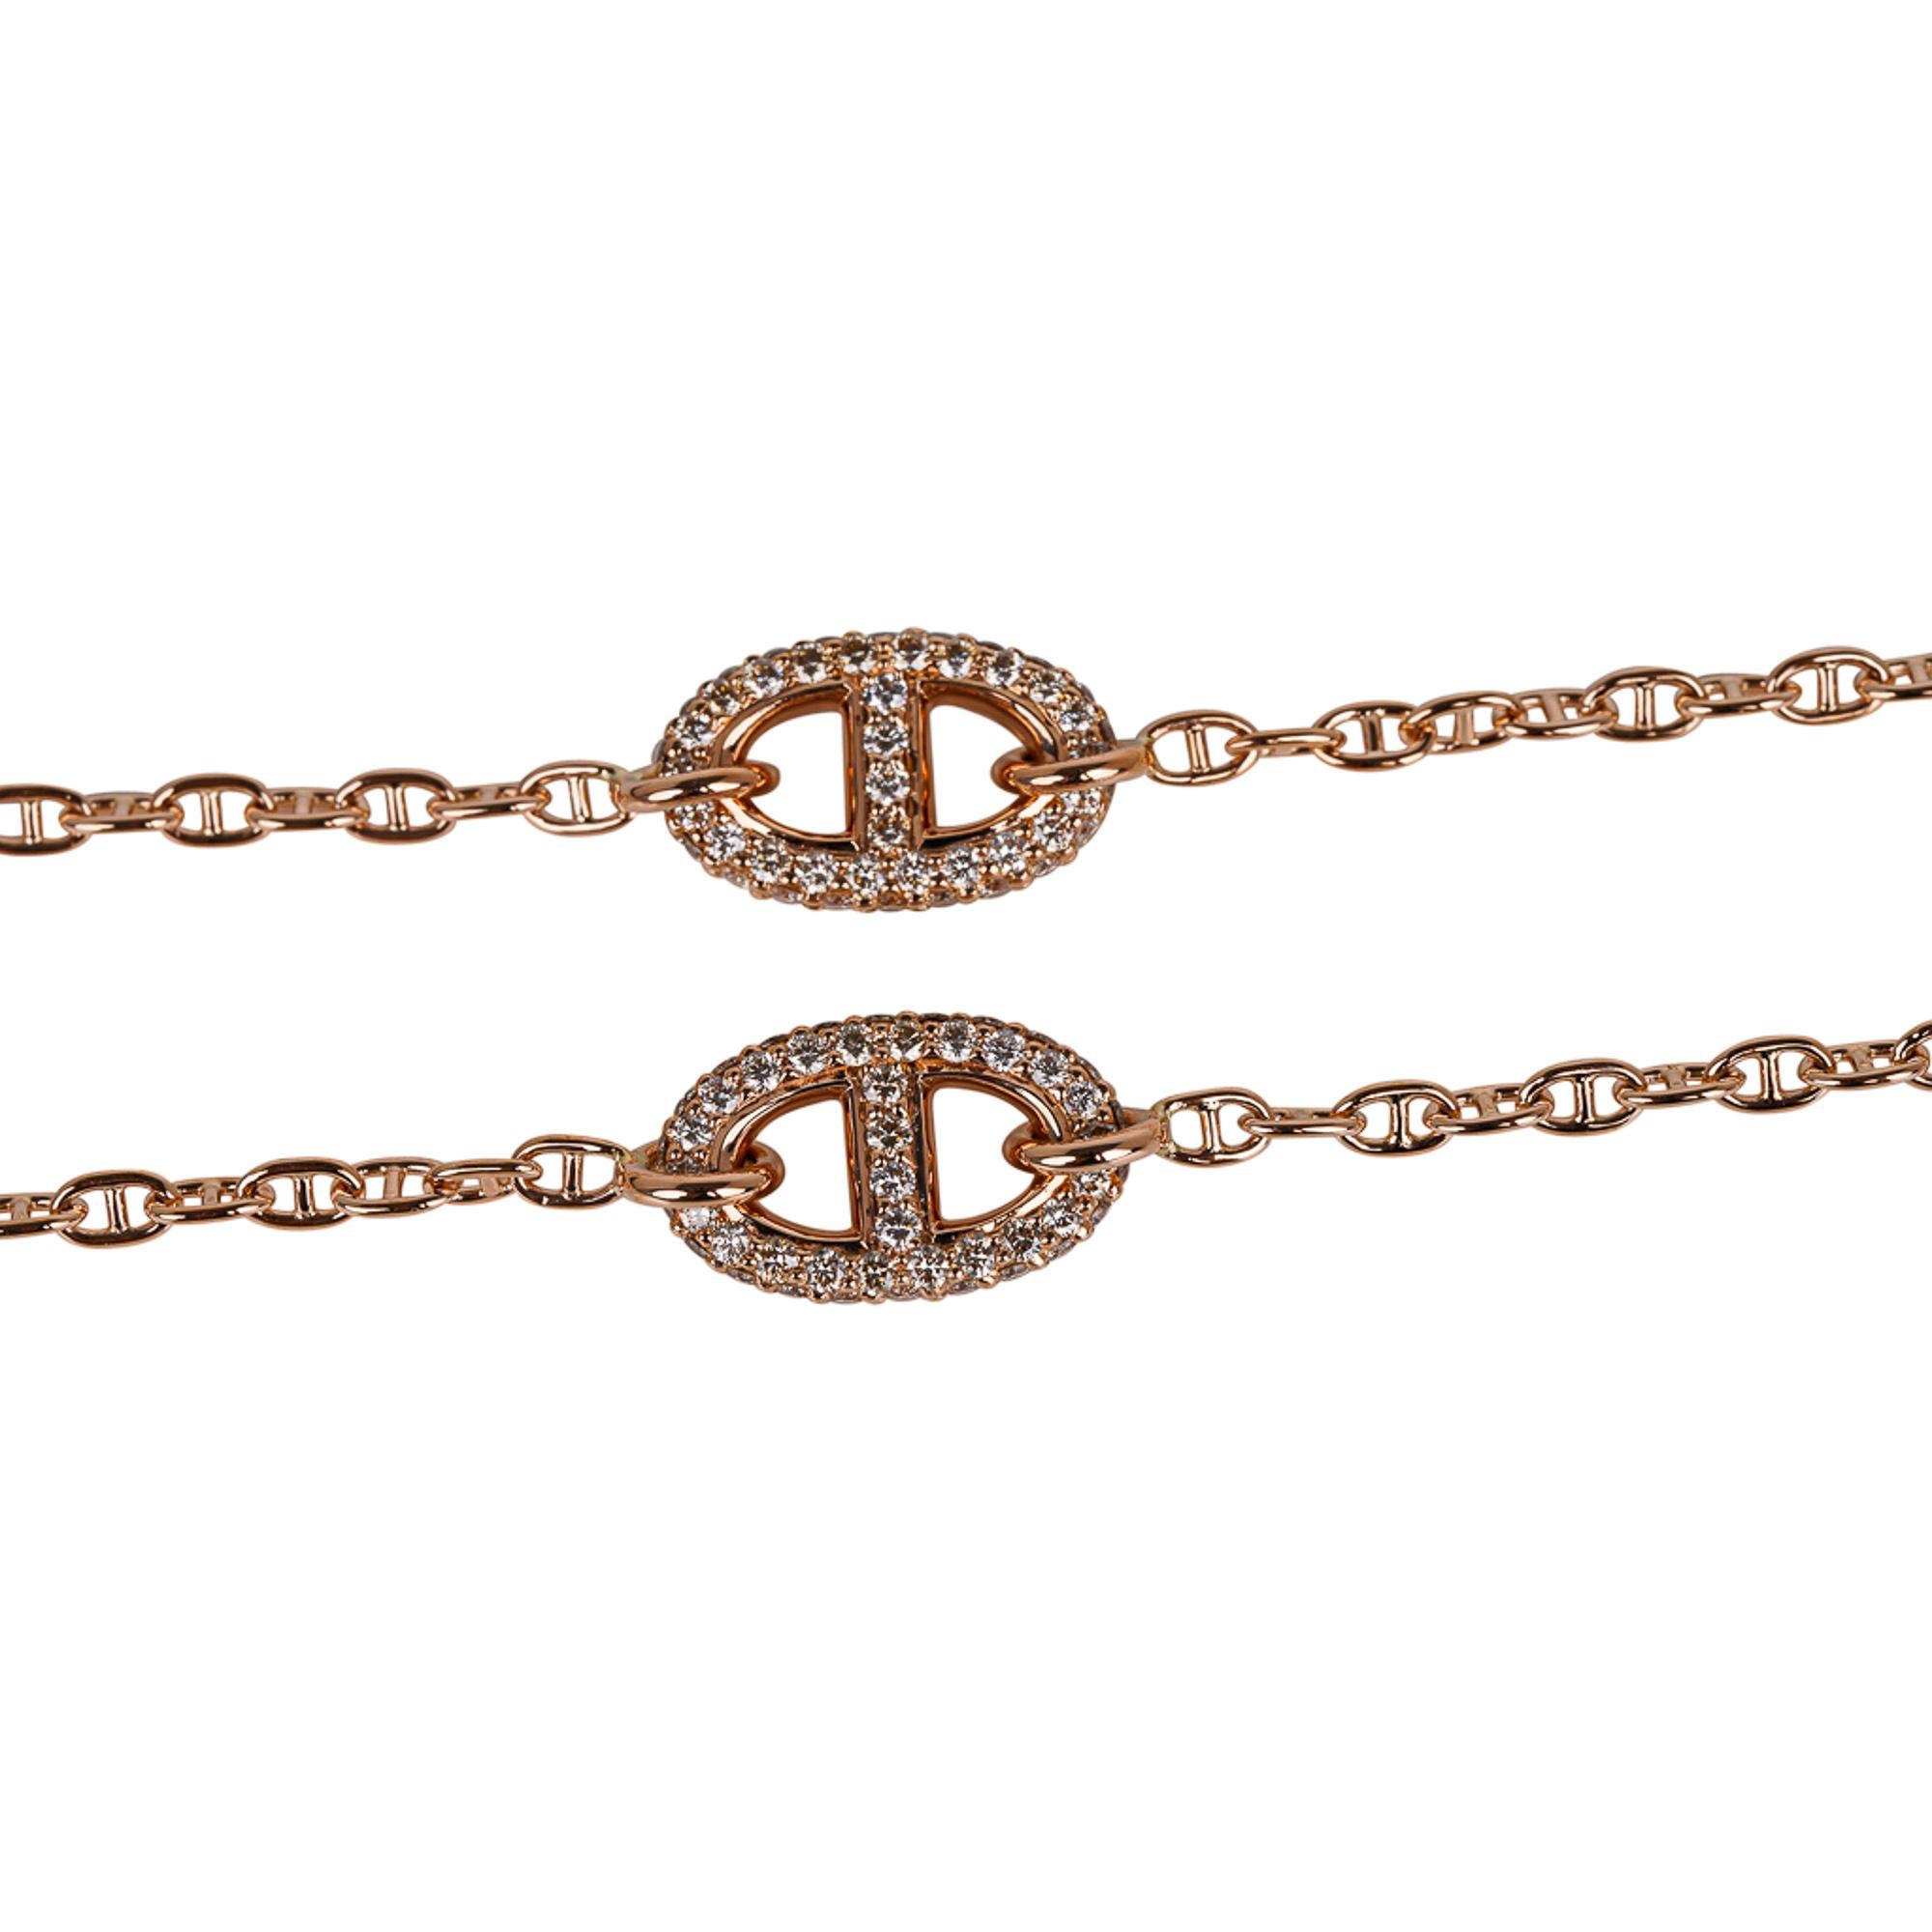 Mightychic propose un collier Hermès New Farandole serti de diamants en or rose 18 carats.
Deux maillons Chaine d'Ancre incrustés de diamants et 3 petits maillons Chaine d'Ancre en or rose.
Serti d'environ 96 diamants d'un poids total de 0,9